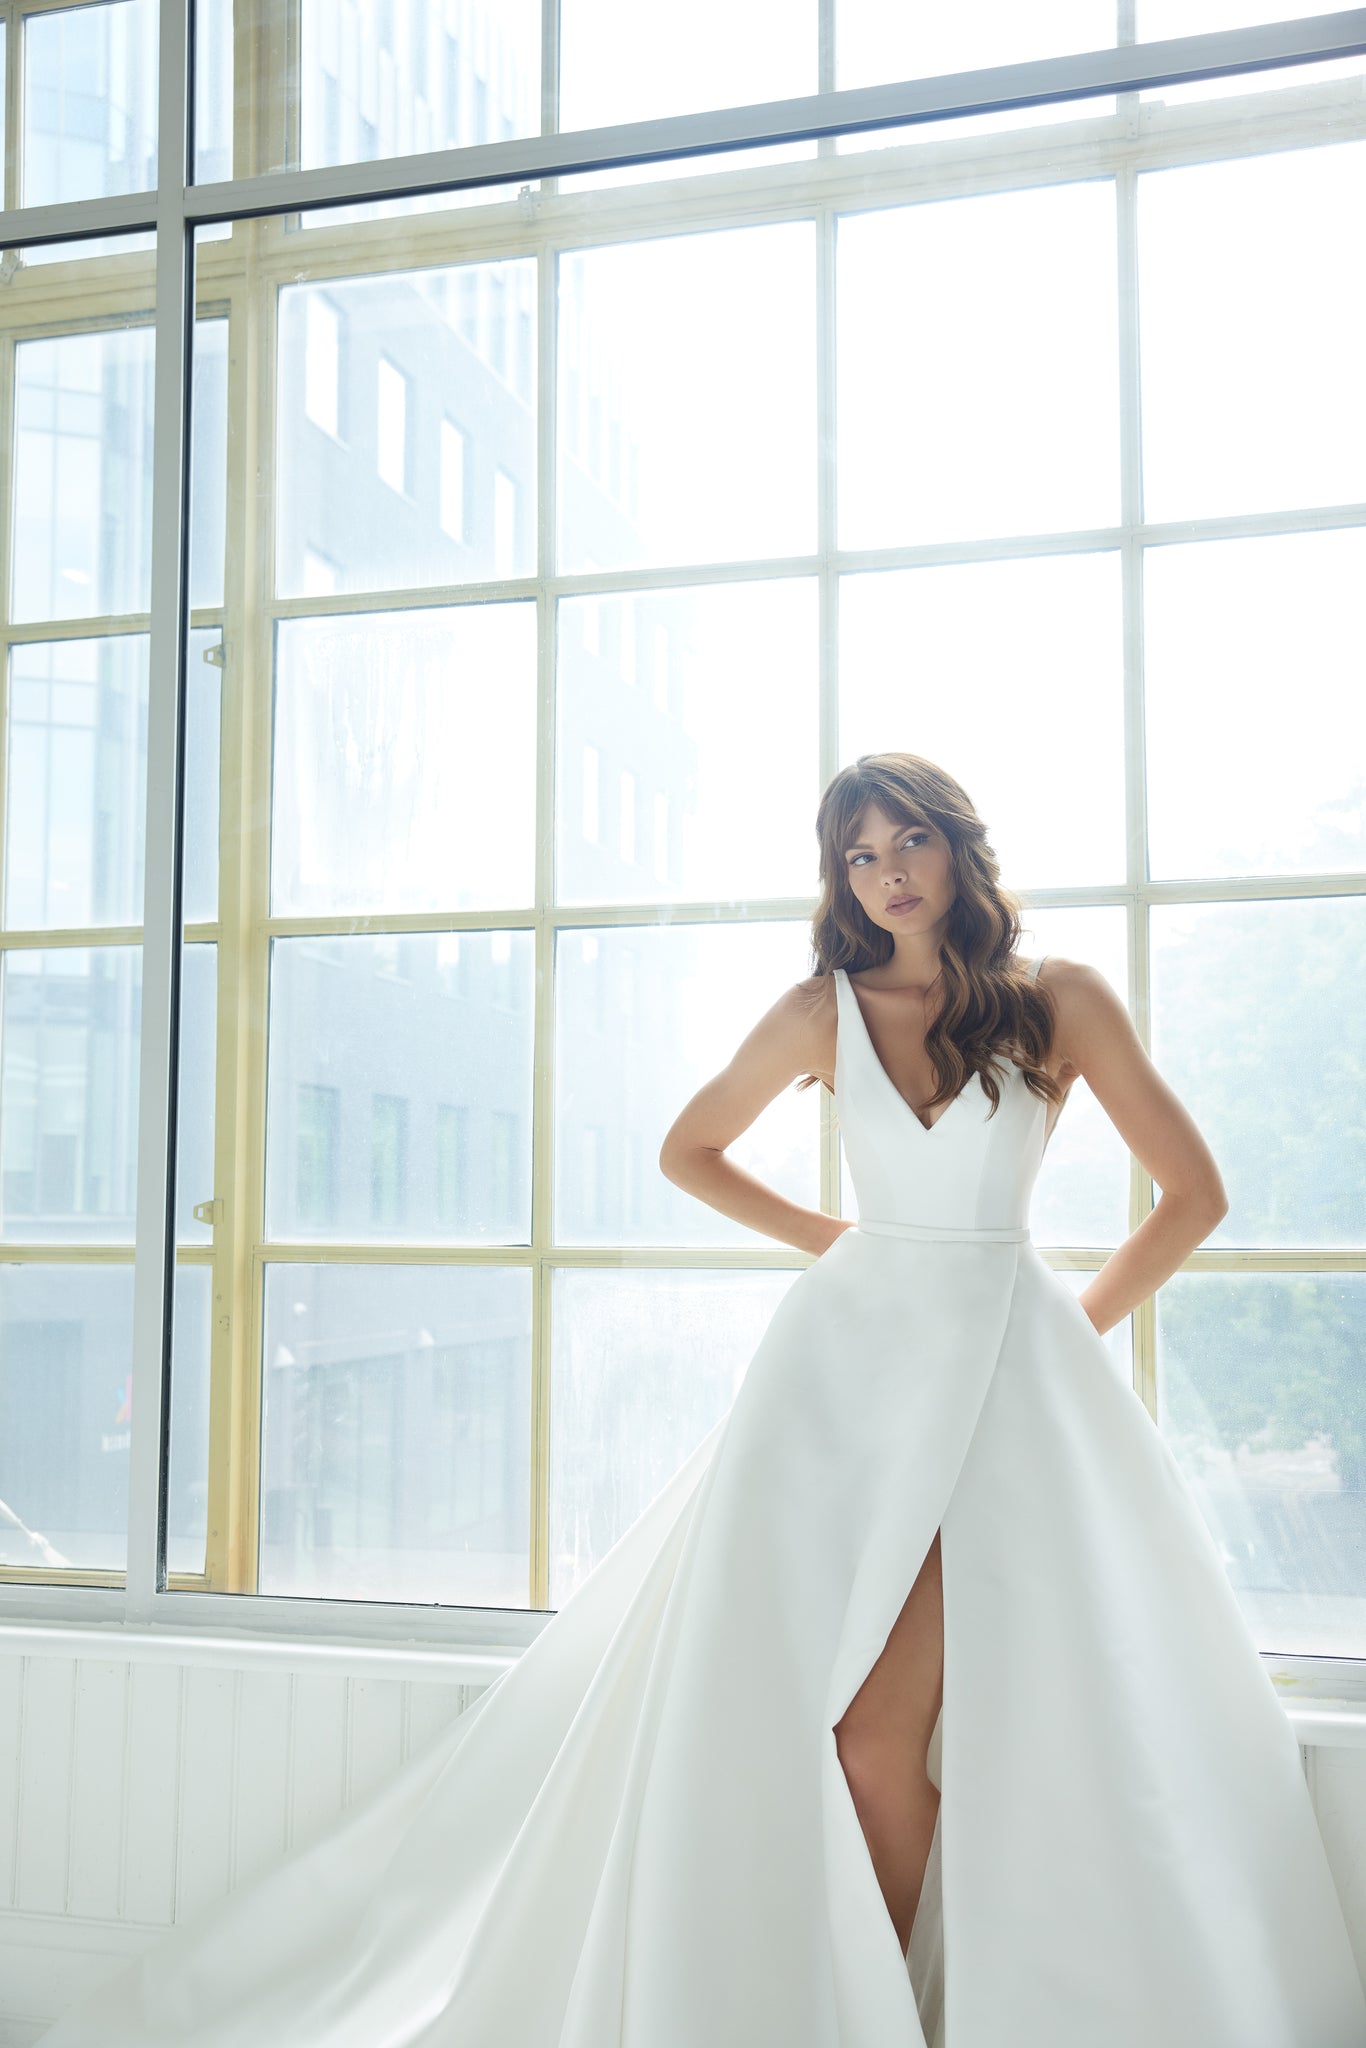 Bloomsbury Wedding Dress - Wedding Atelier NYC Suzanne Neville